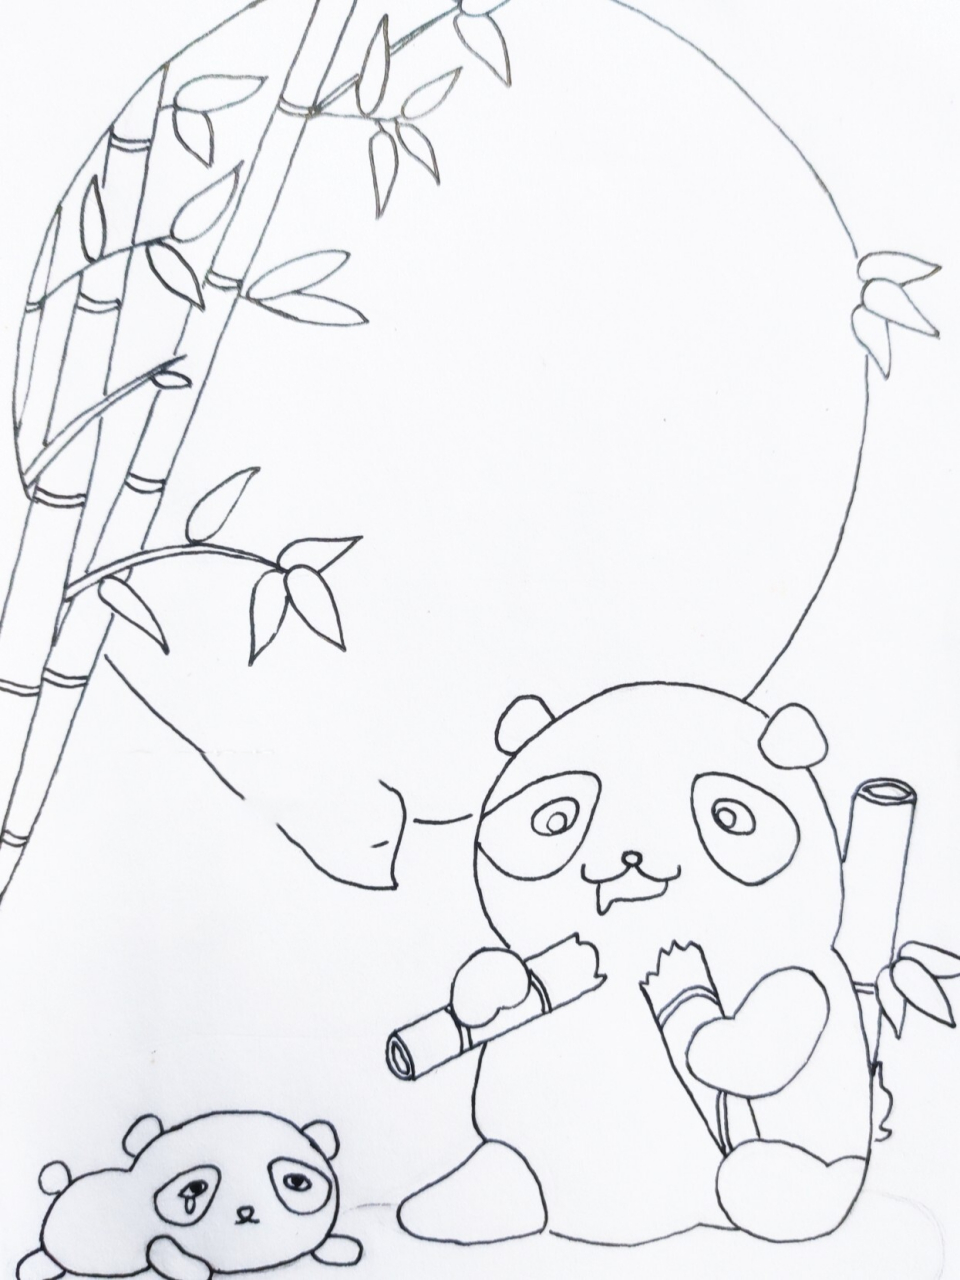 熊猫竹子简笔画趴着图片